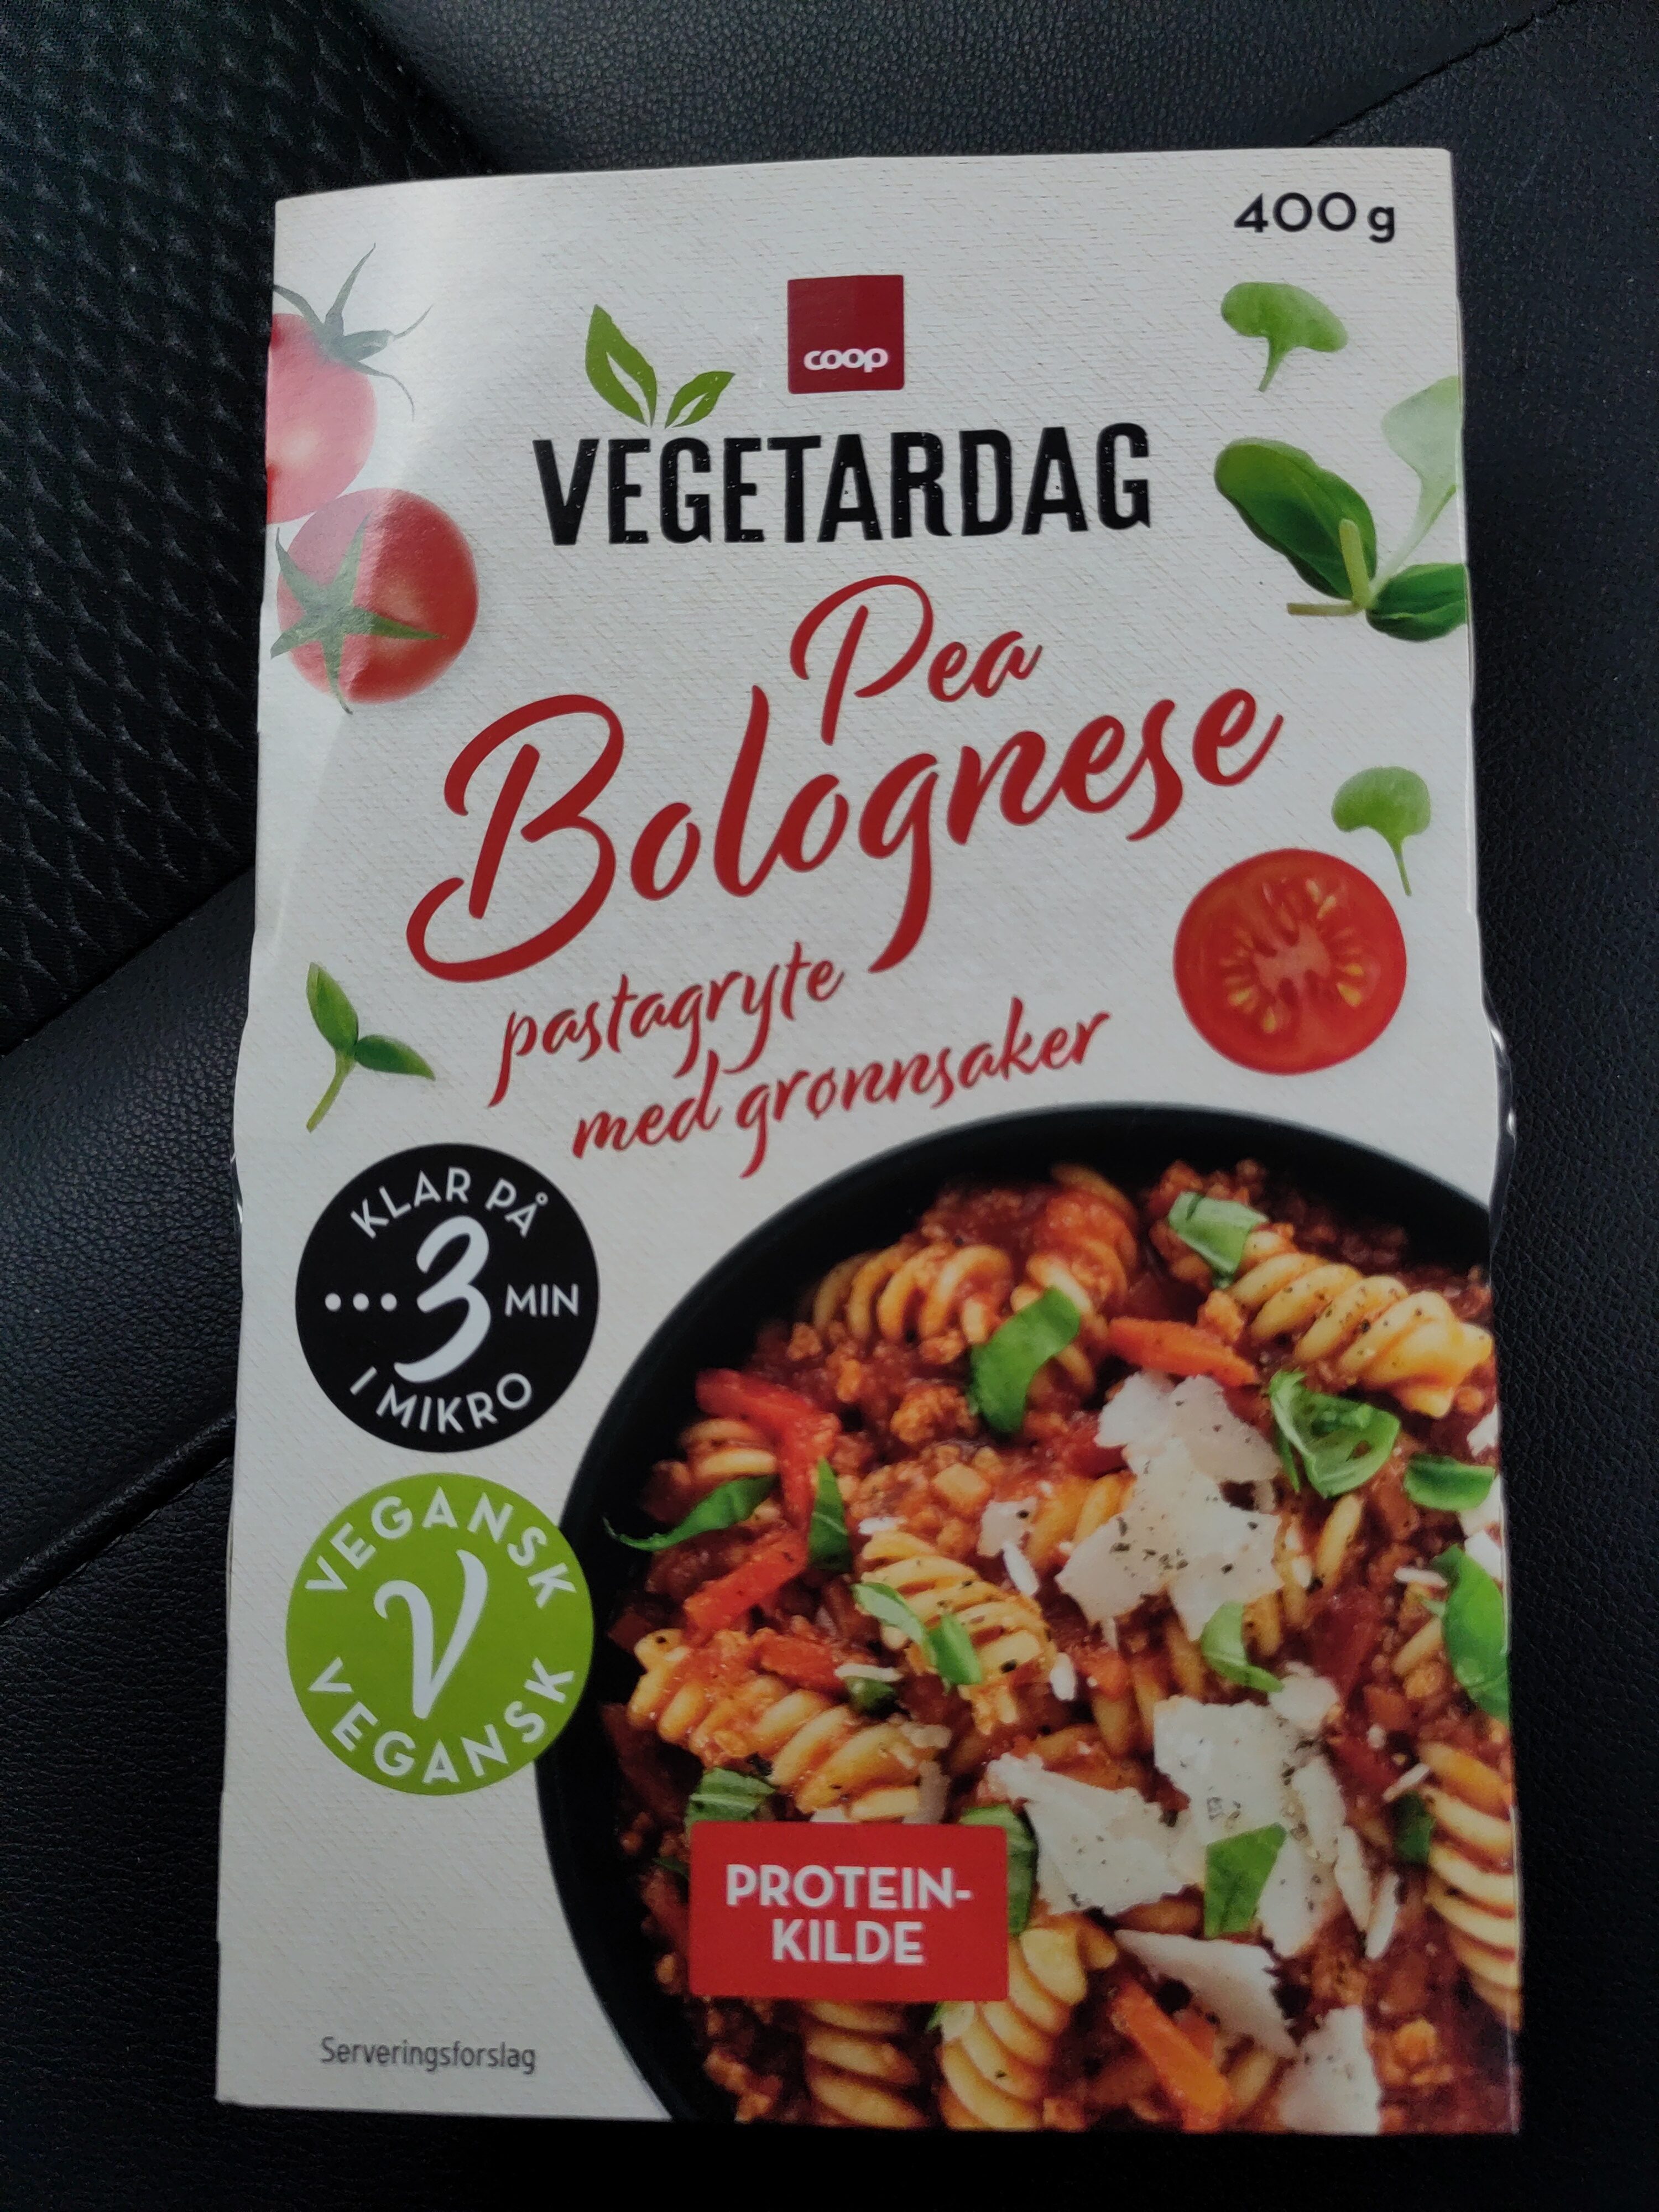 Vegetardag pea bolognese - Produkt - en